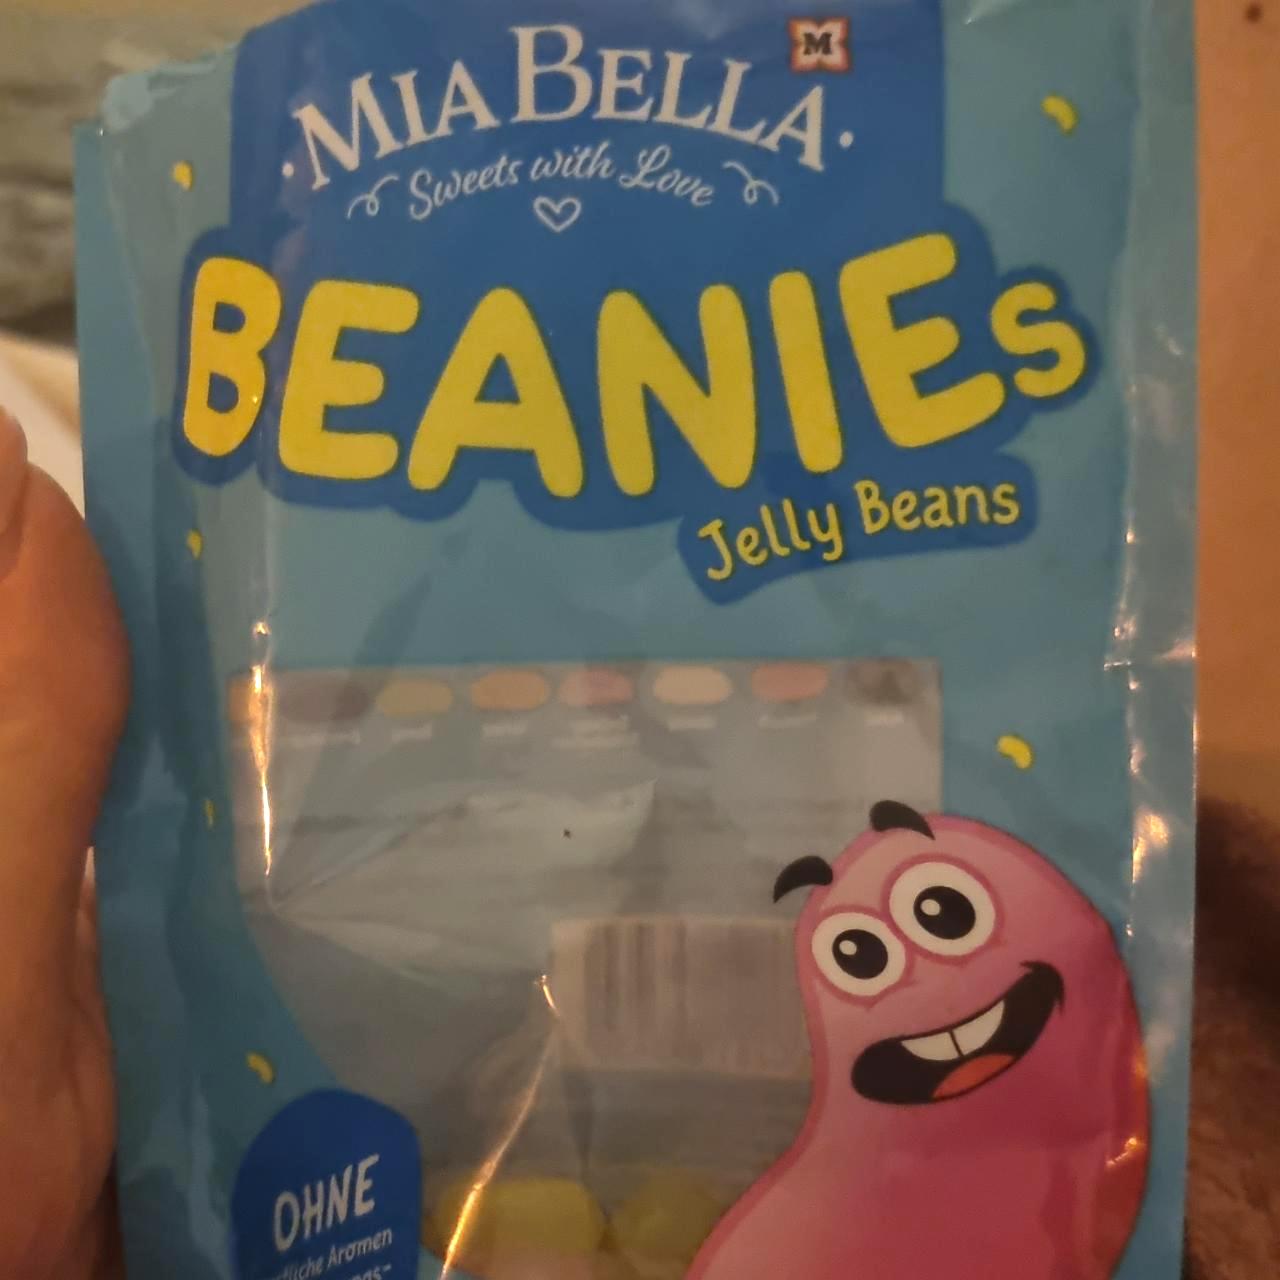 Képek - Beanies jelly beans Mia Bella